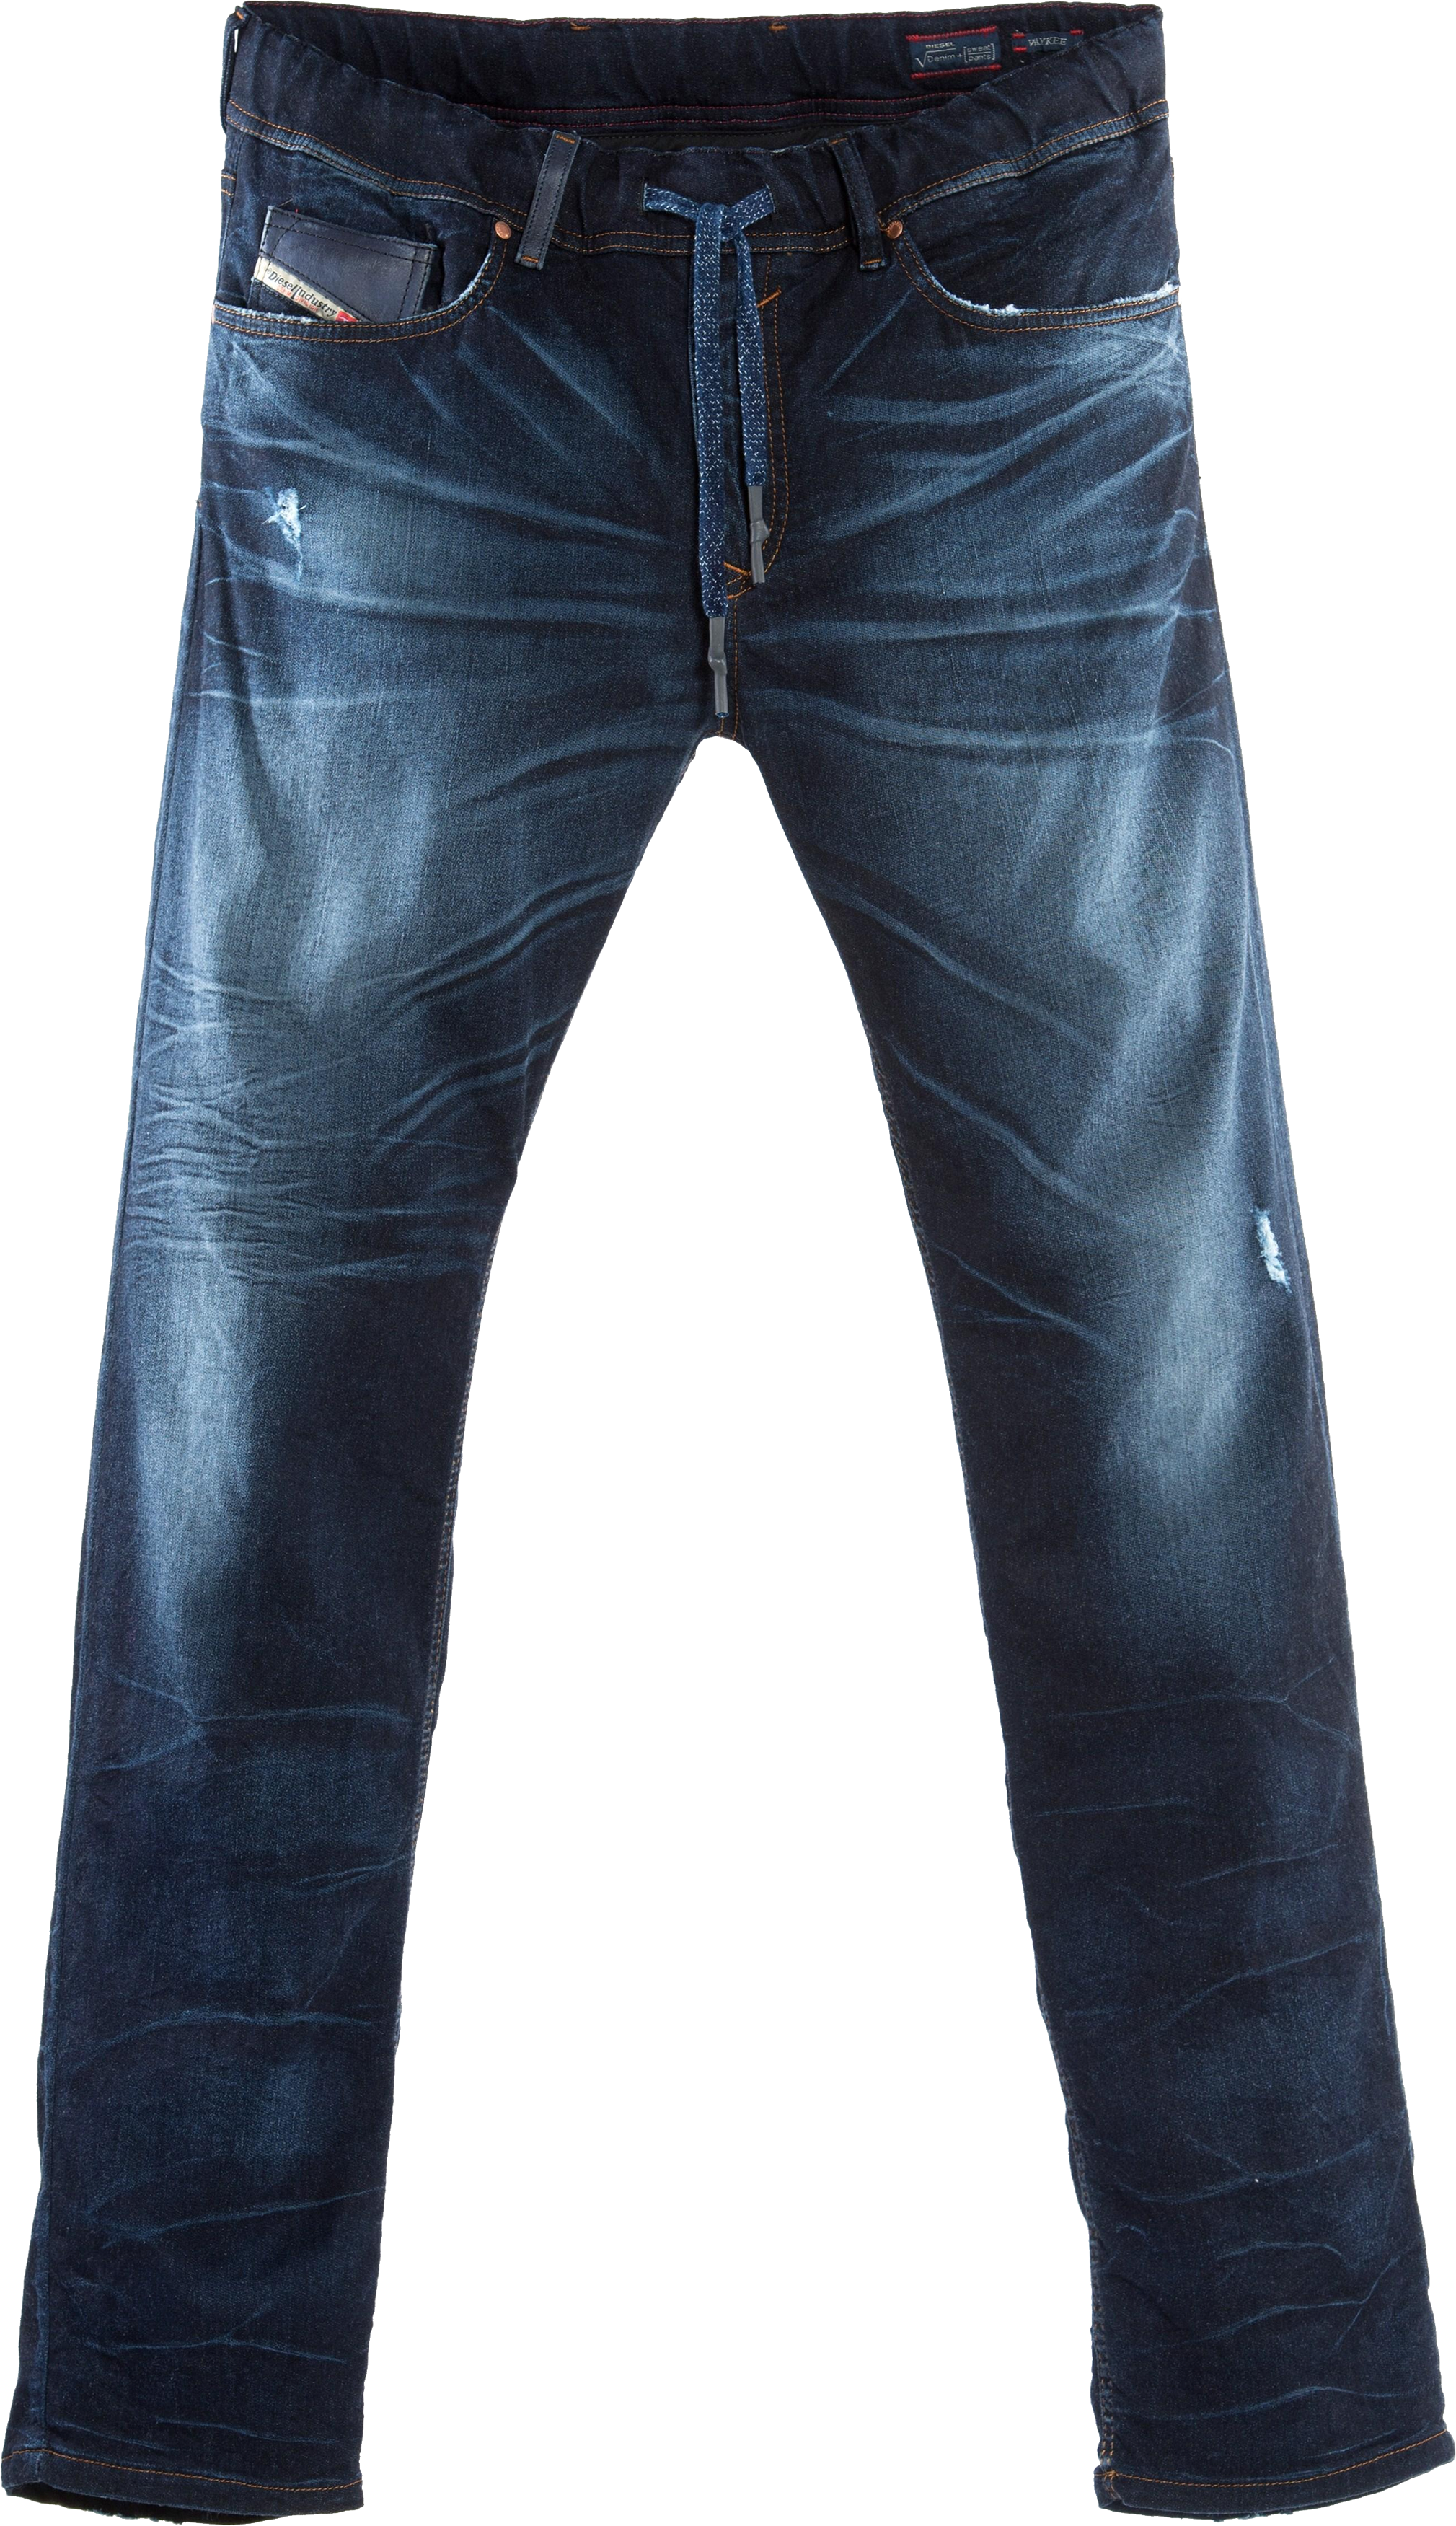 Jeans PNG Gambar berkualitas tinggi